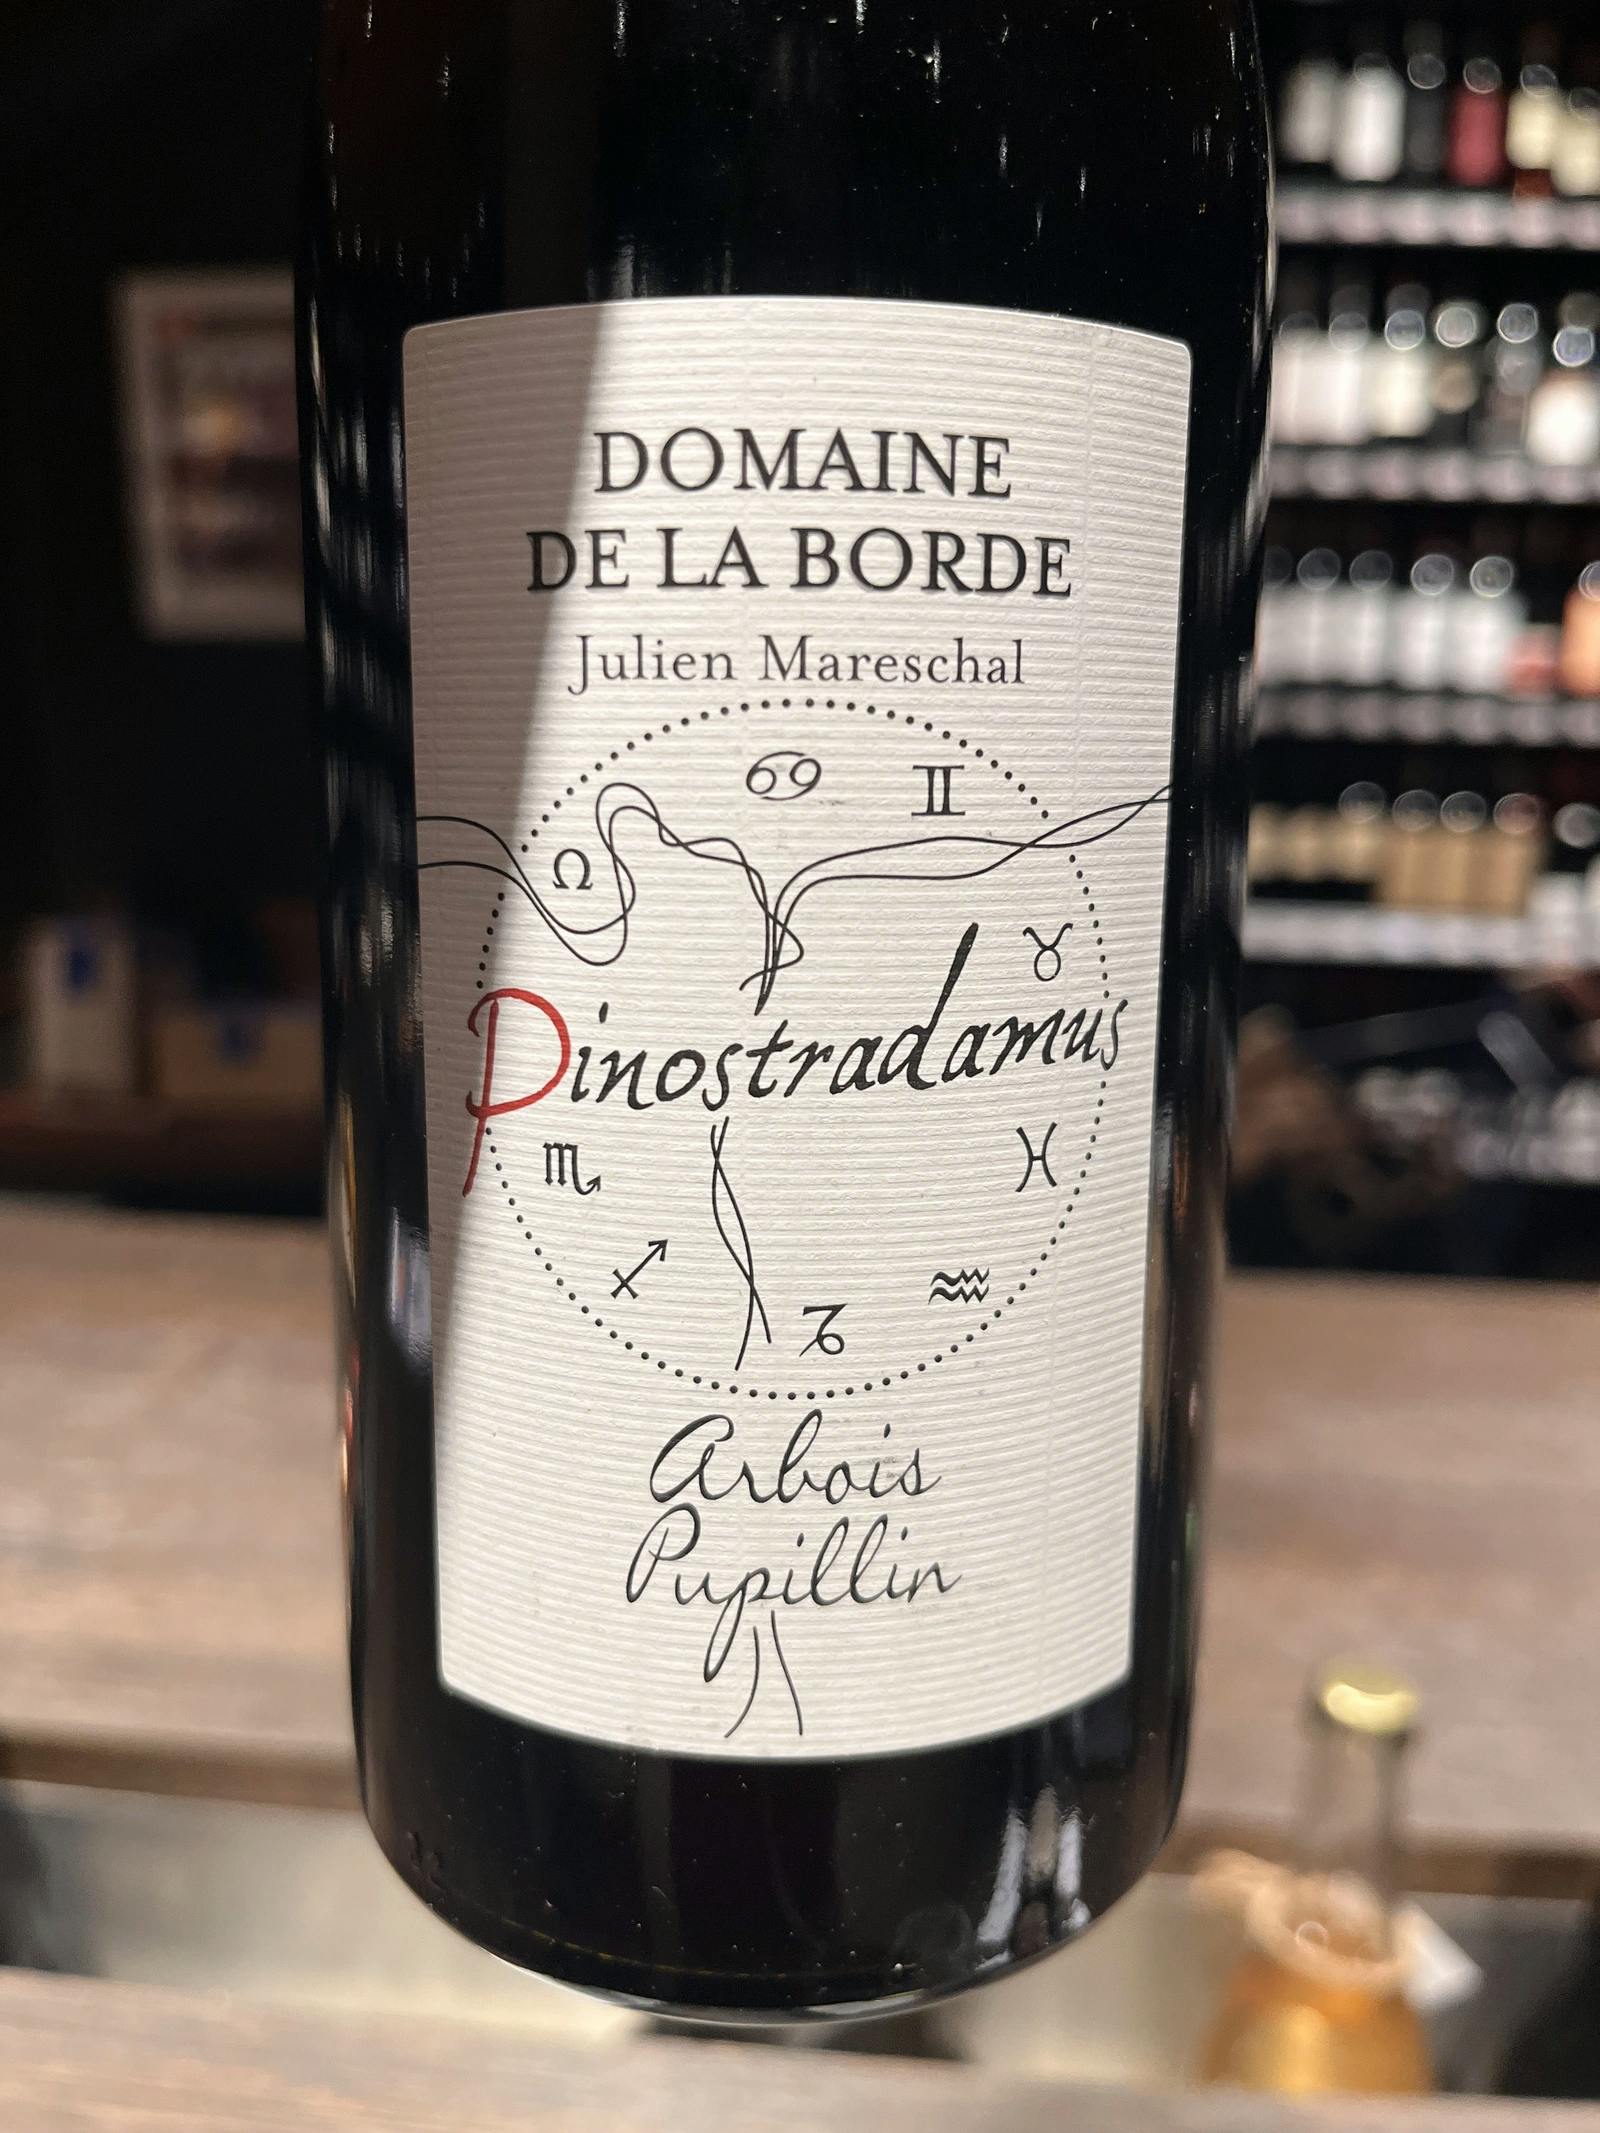 Domaine de La Borde Pinostradamus Pinot Noir 2018